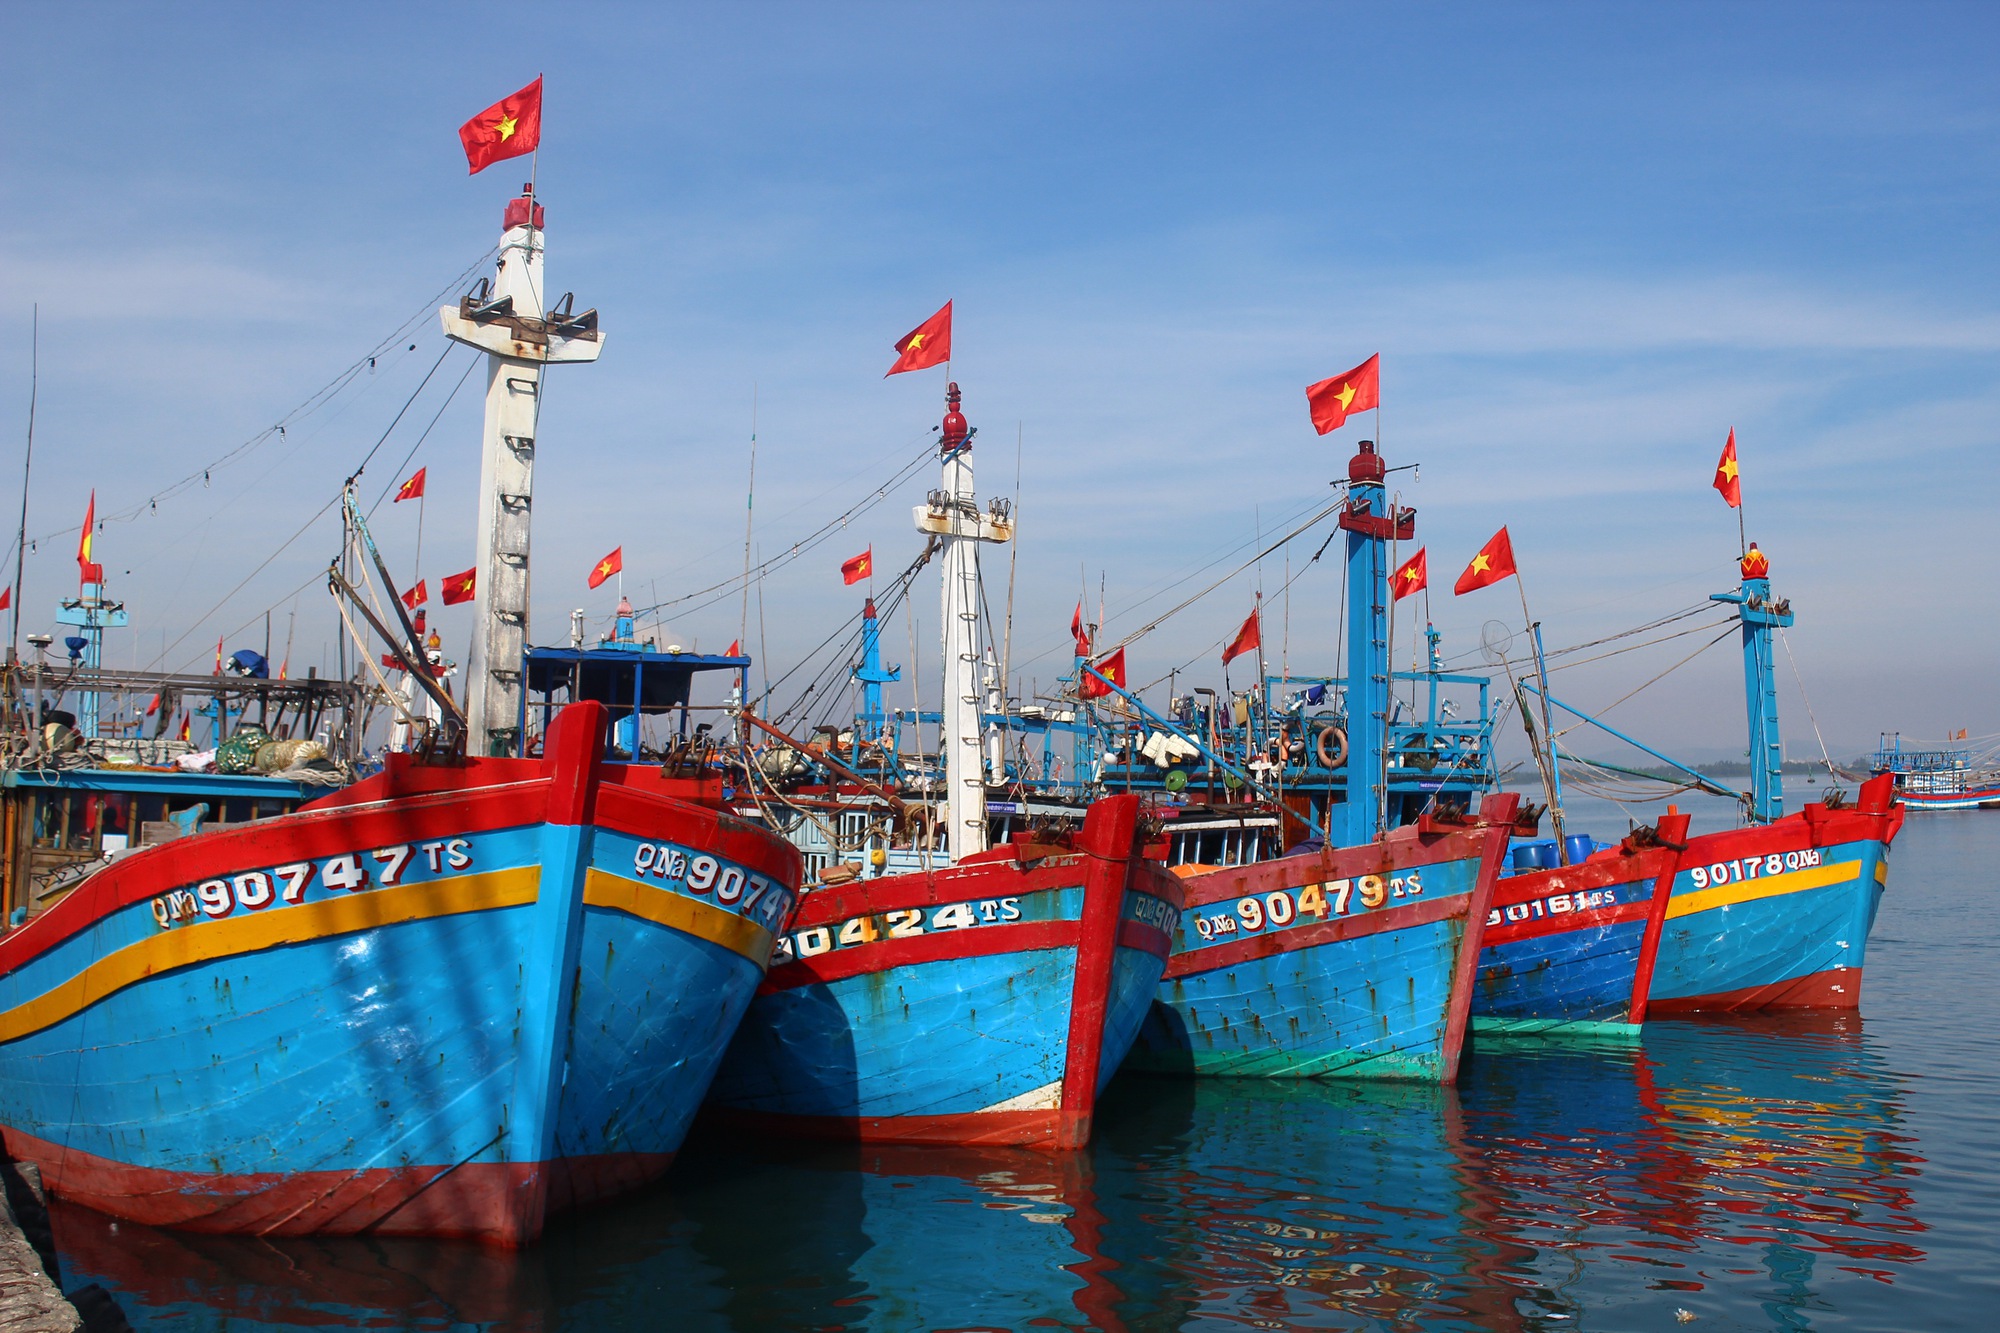 Hoàn thiện chính sách hỗ trợ ngư dân trong thời gian cấm khai thác thủy sản